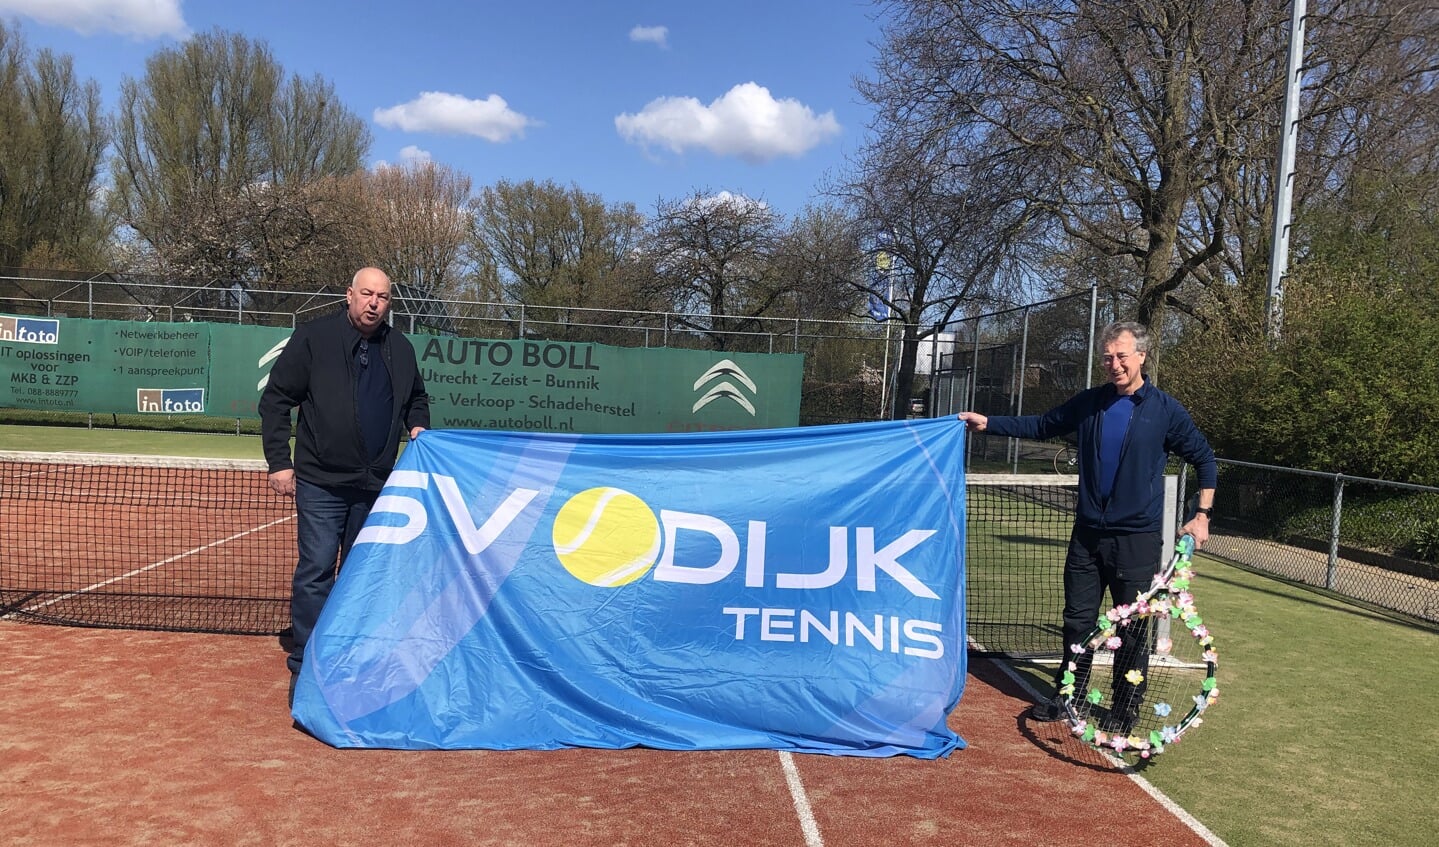 Ben Greeven (Sunnycamp) en Jan Kühne kwamen samen hun sponsorbankje bekijken. Het zijn neven van elkaar en zijn al jarenlang een trouwe sponsor van SV Odijk Tennis.